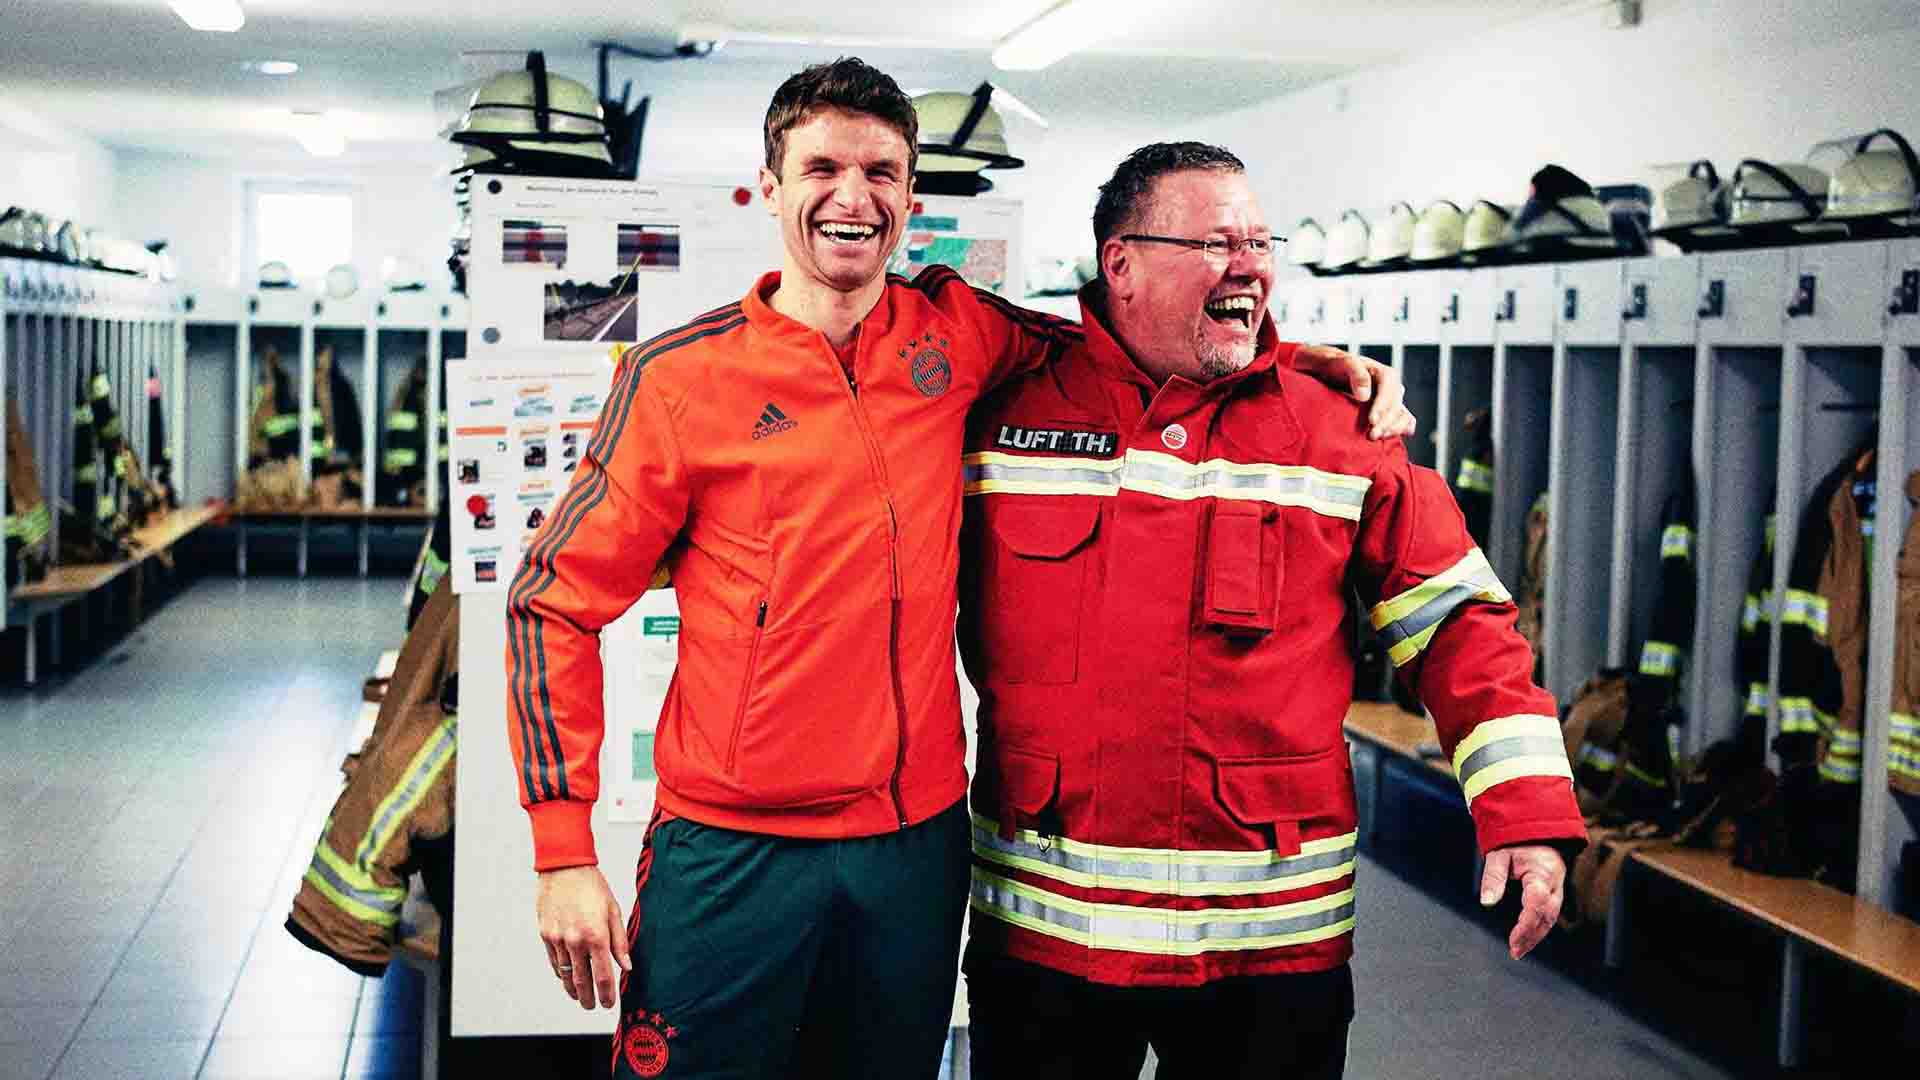 Das Bild zeigt Fußballstar Thomas Müller des FC Bayern Münchens und einen Feuerwehrmann. Beide Männer halten sich an den Schultern und lachen. Sie stehen in einer Umkleidekabine. Das Bild dient als Sliderbild für den Portfolioeintrag "Audi | FC Bayern München Ehrenrunde" von Panda Pictures.